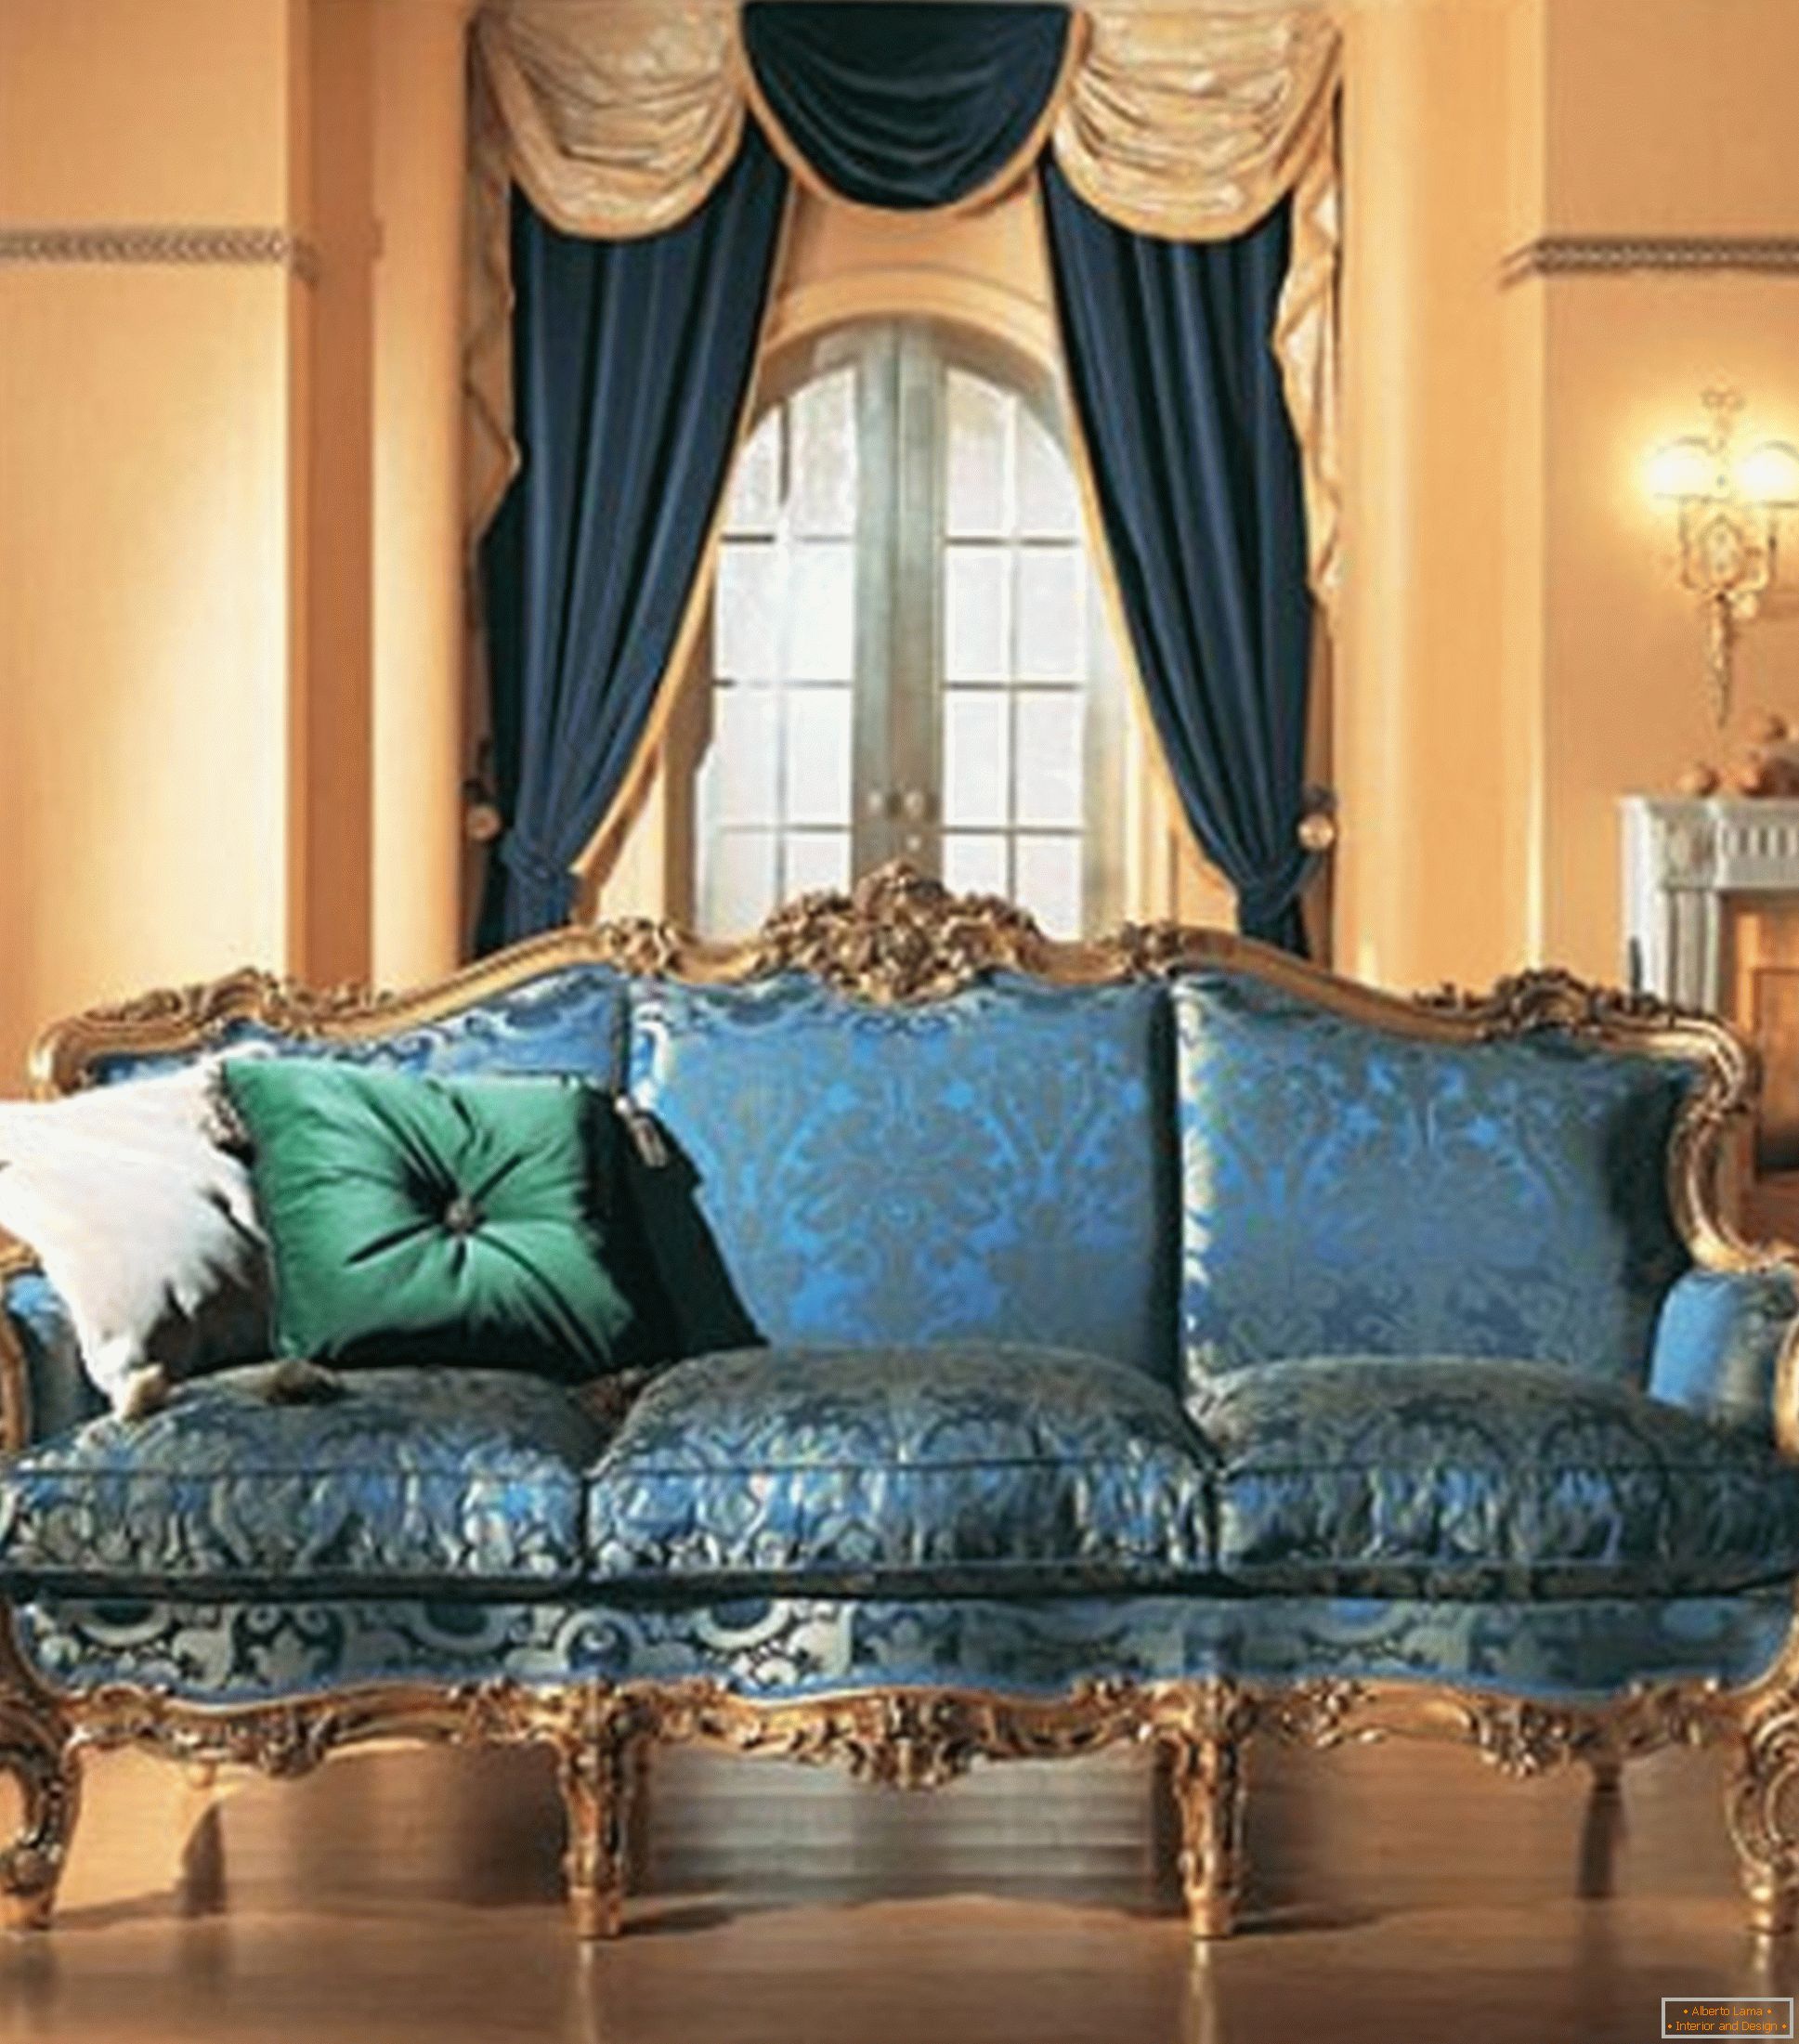 Kombinacija kontrastnih boja u ukrasu dnevne sobe u baroknom stilu.